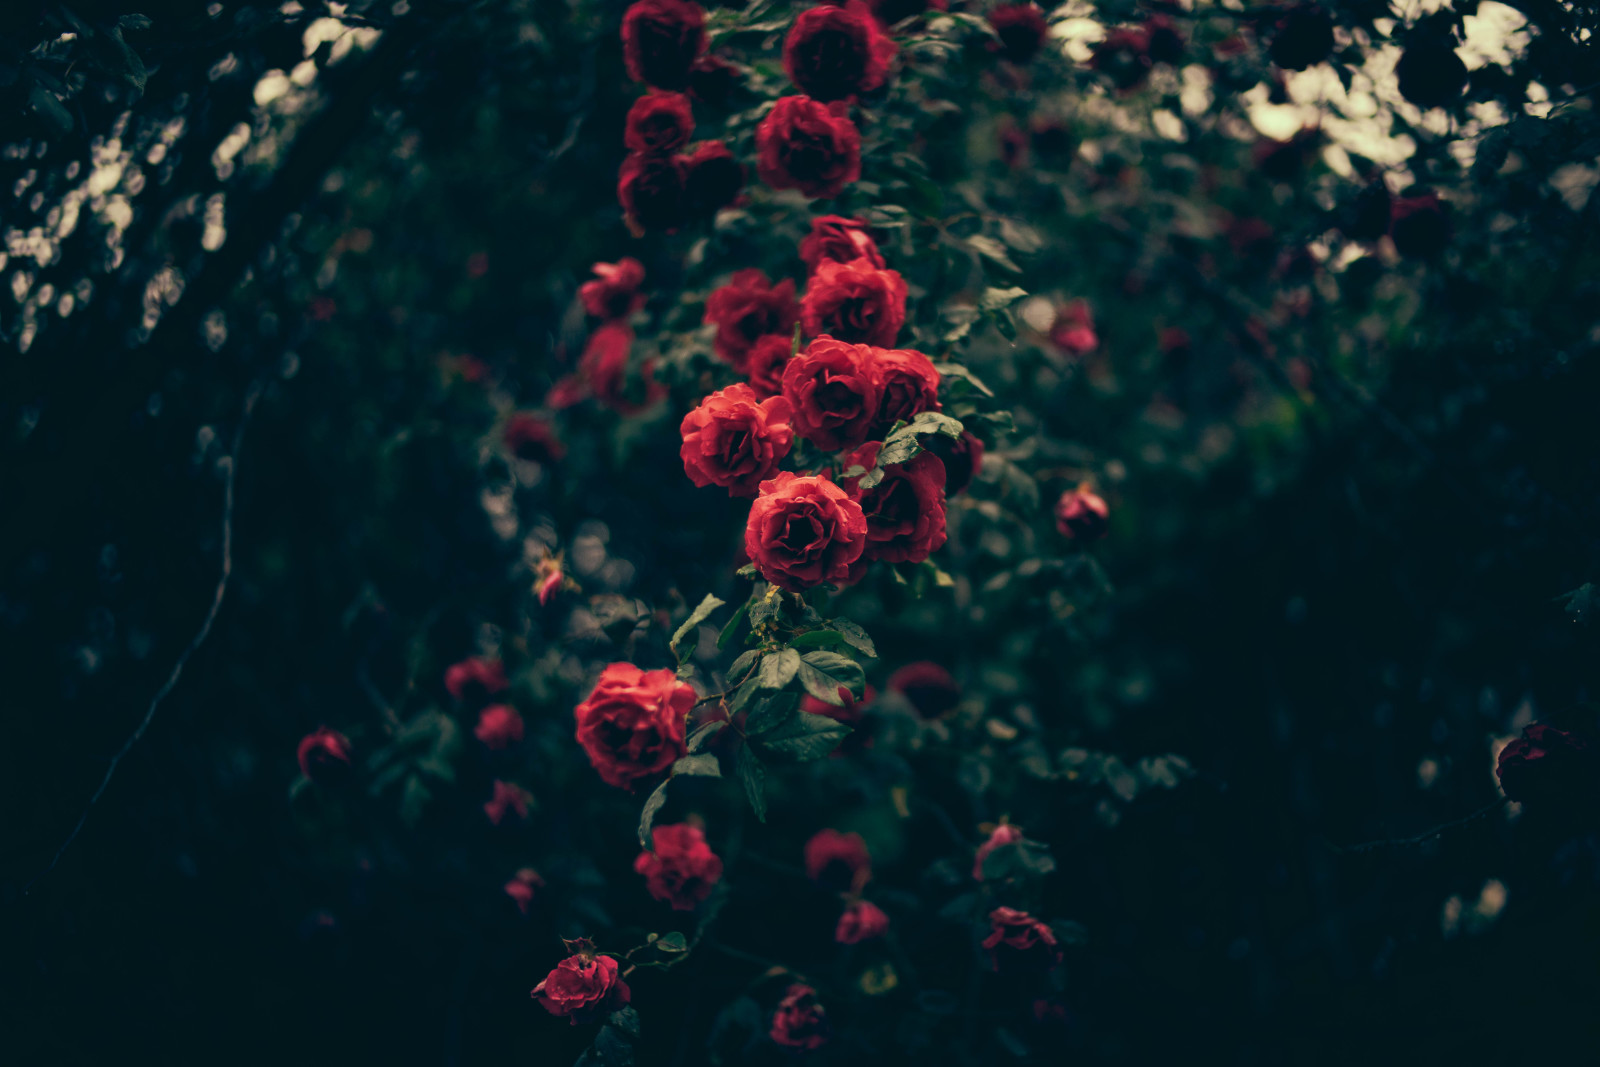 merah, mawar, bunga-bunga, kelopak